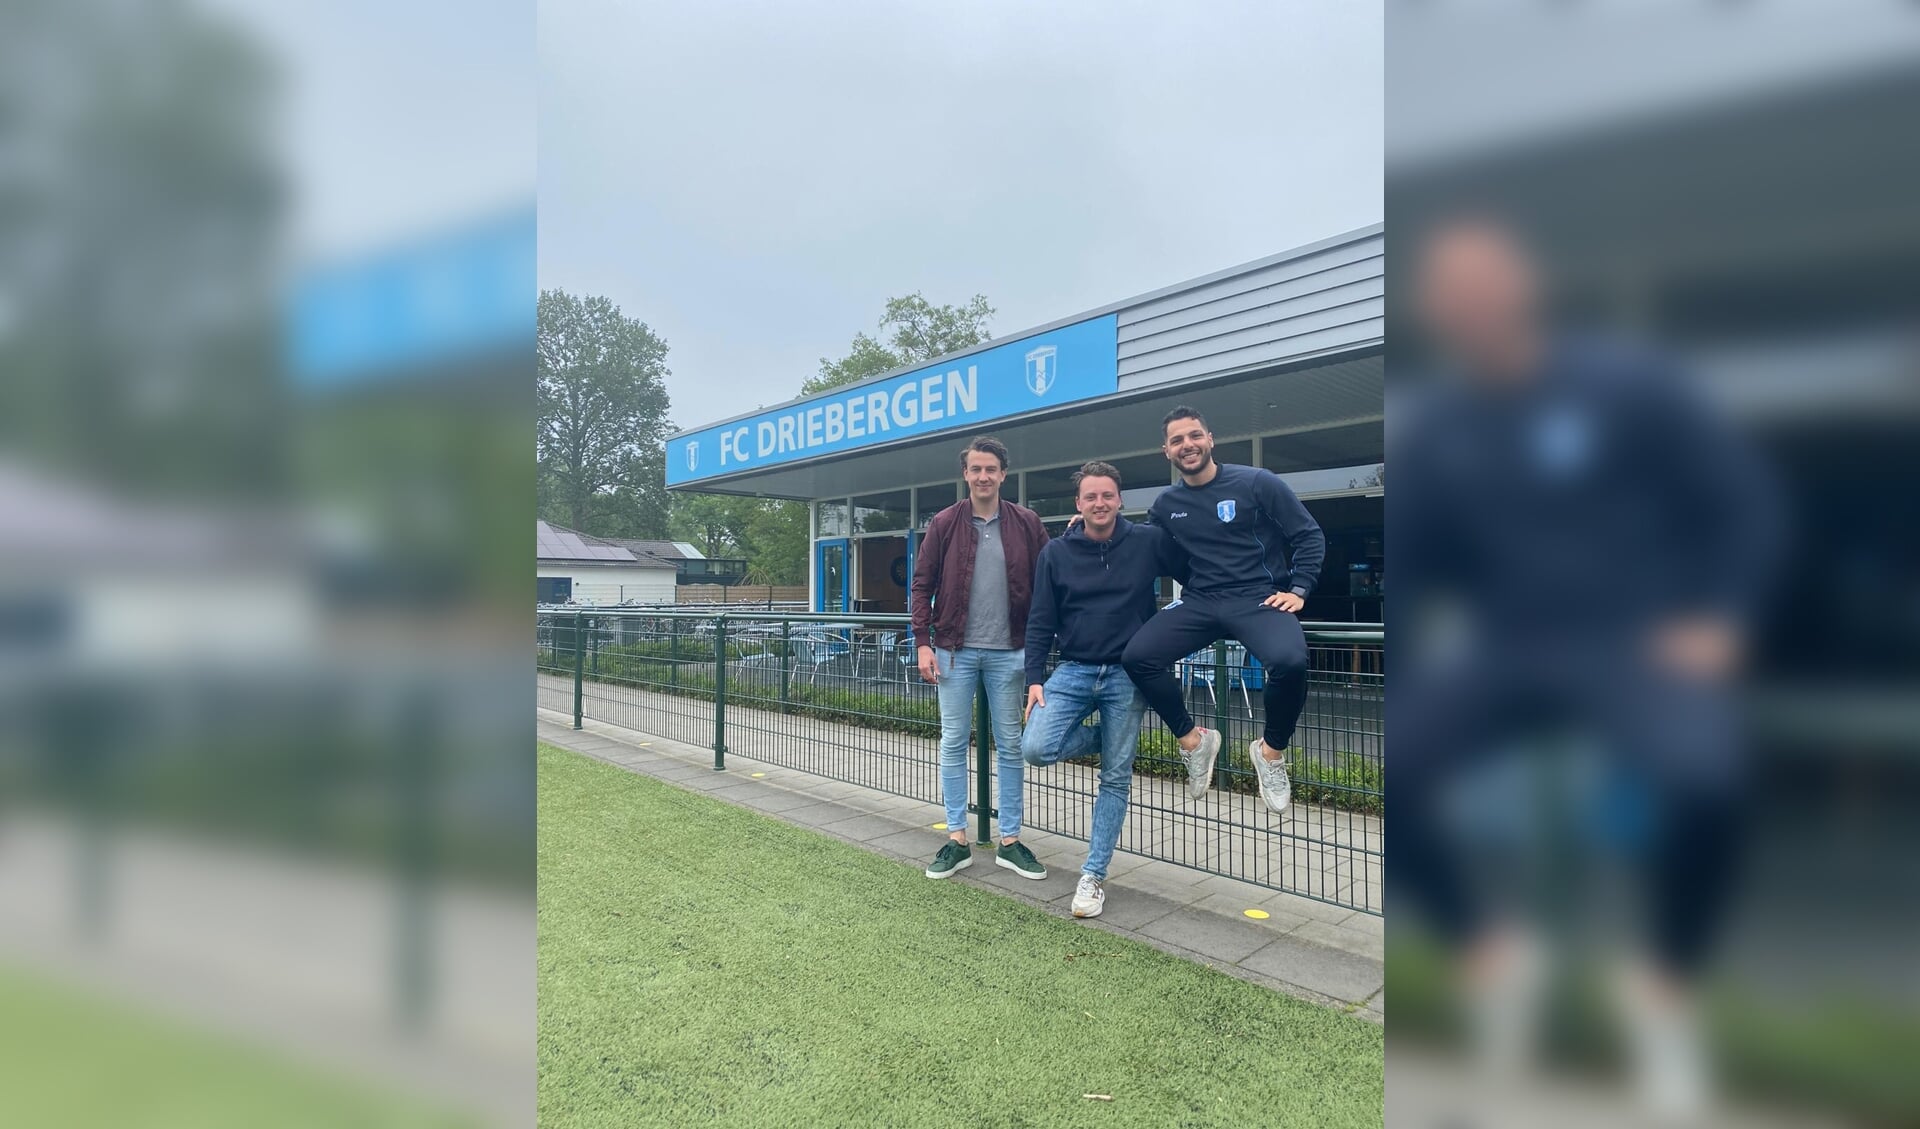 Drie oud eerste elftalspelers van de club hebben gezamenlijk het doel om met FC Driebergen weer de weg omhoog te vinden.